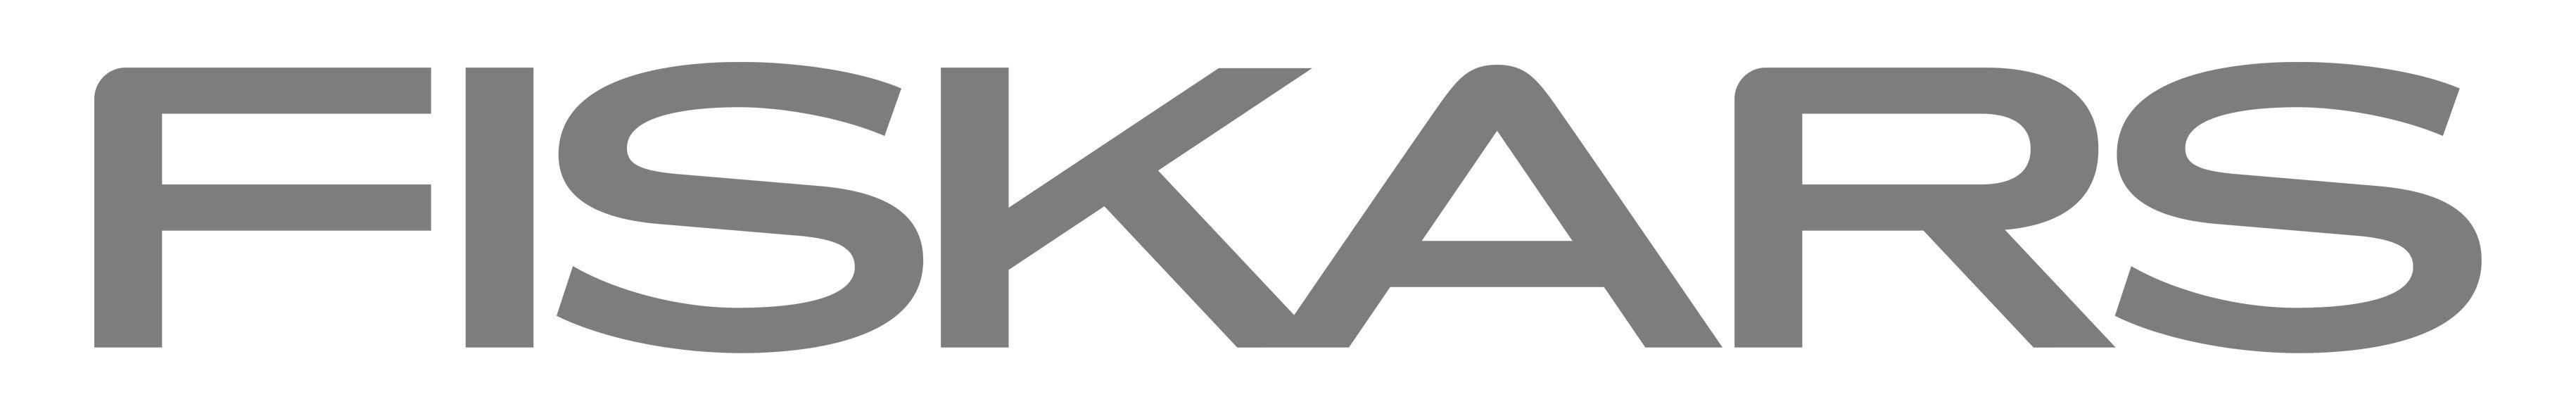 Fiskars Logo - Fiskars